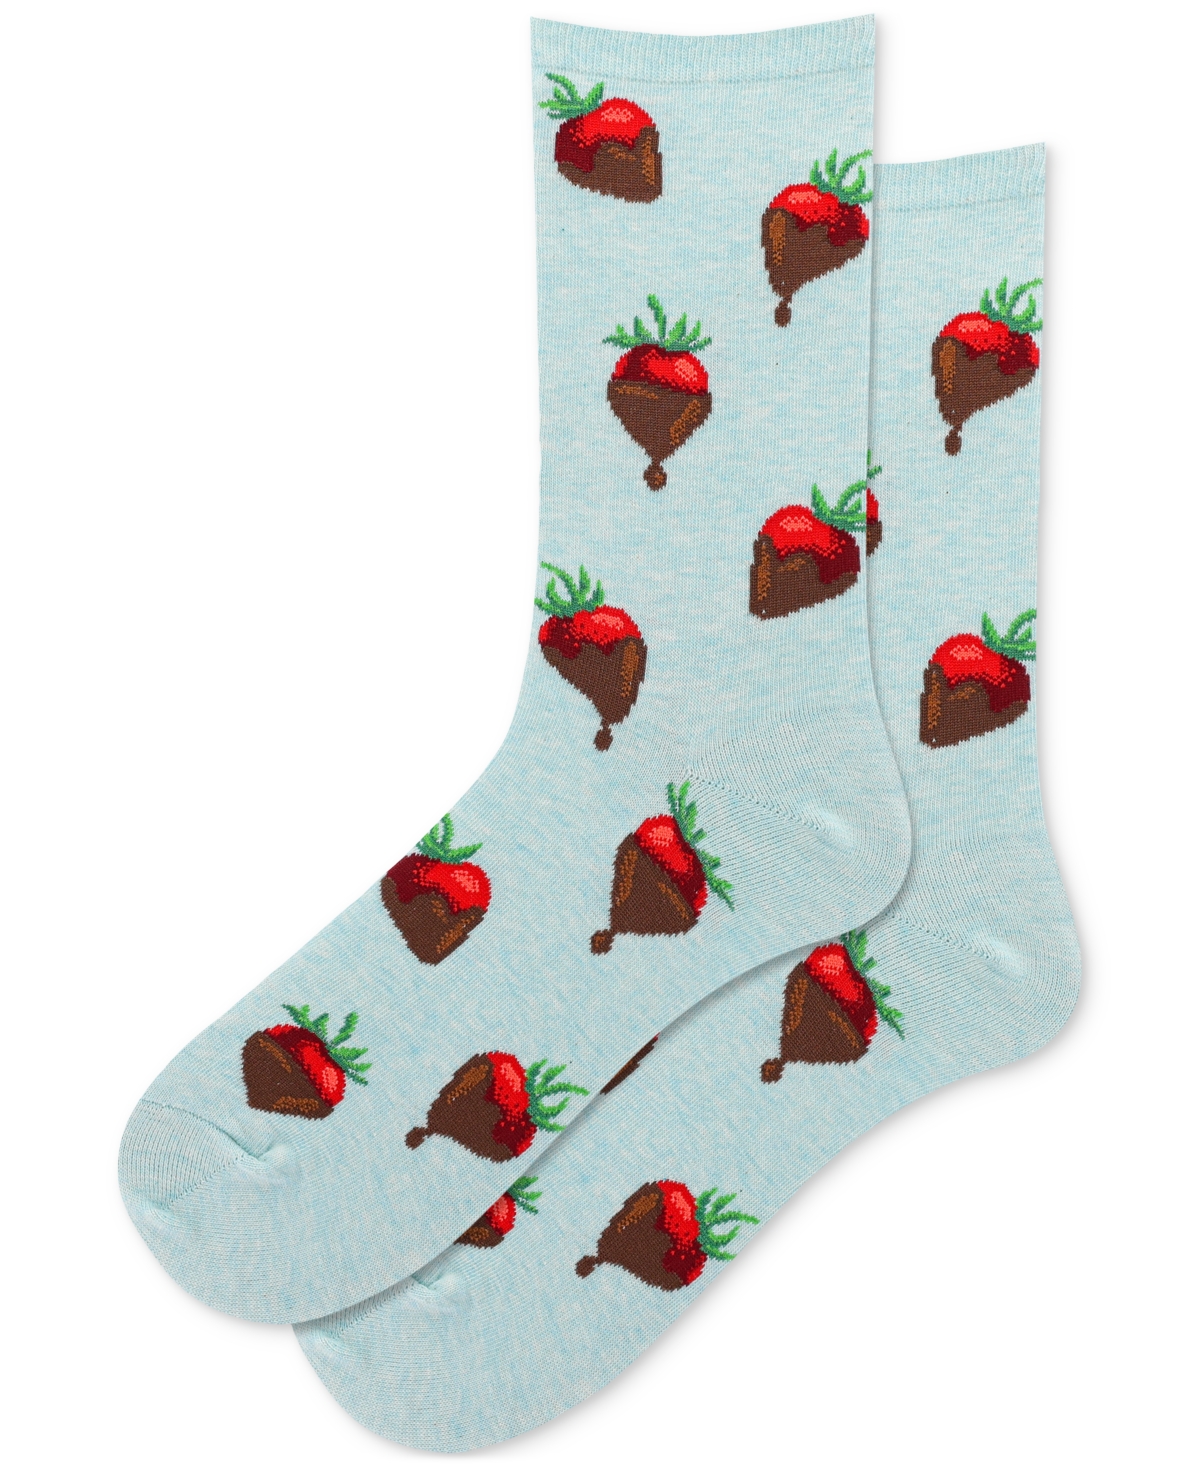 Women's Chocolate Covered Strawberries Crew Socks - Chocolate Covered Strawberries